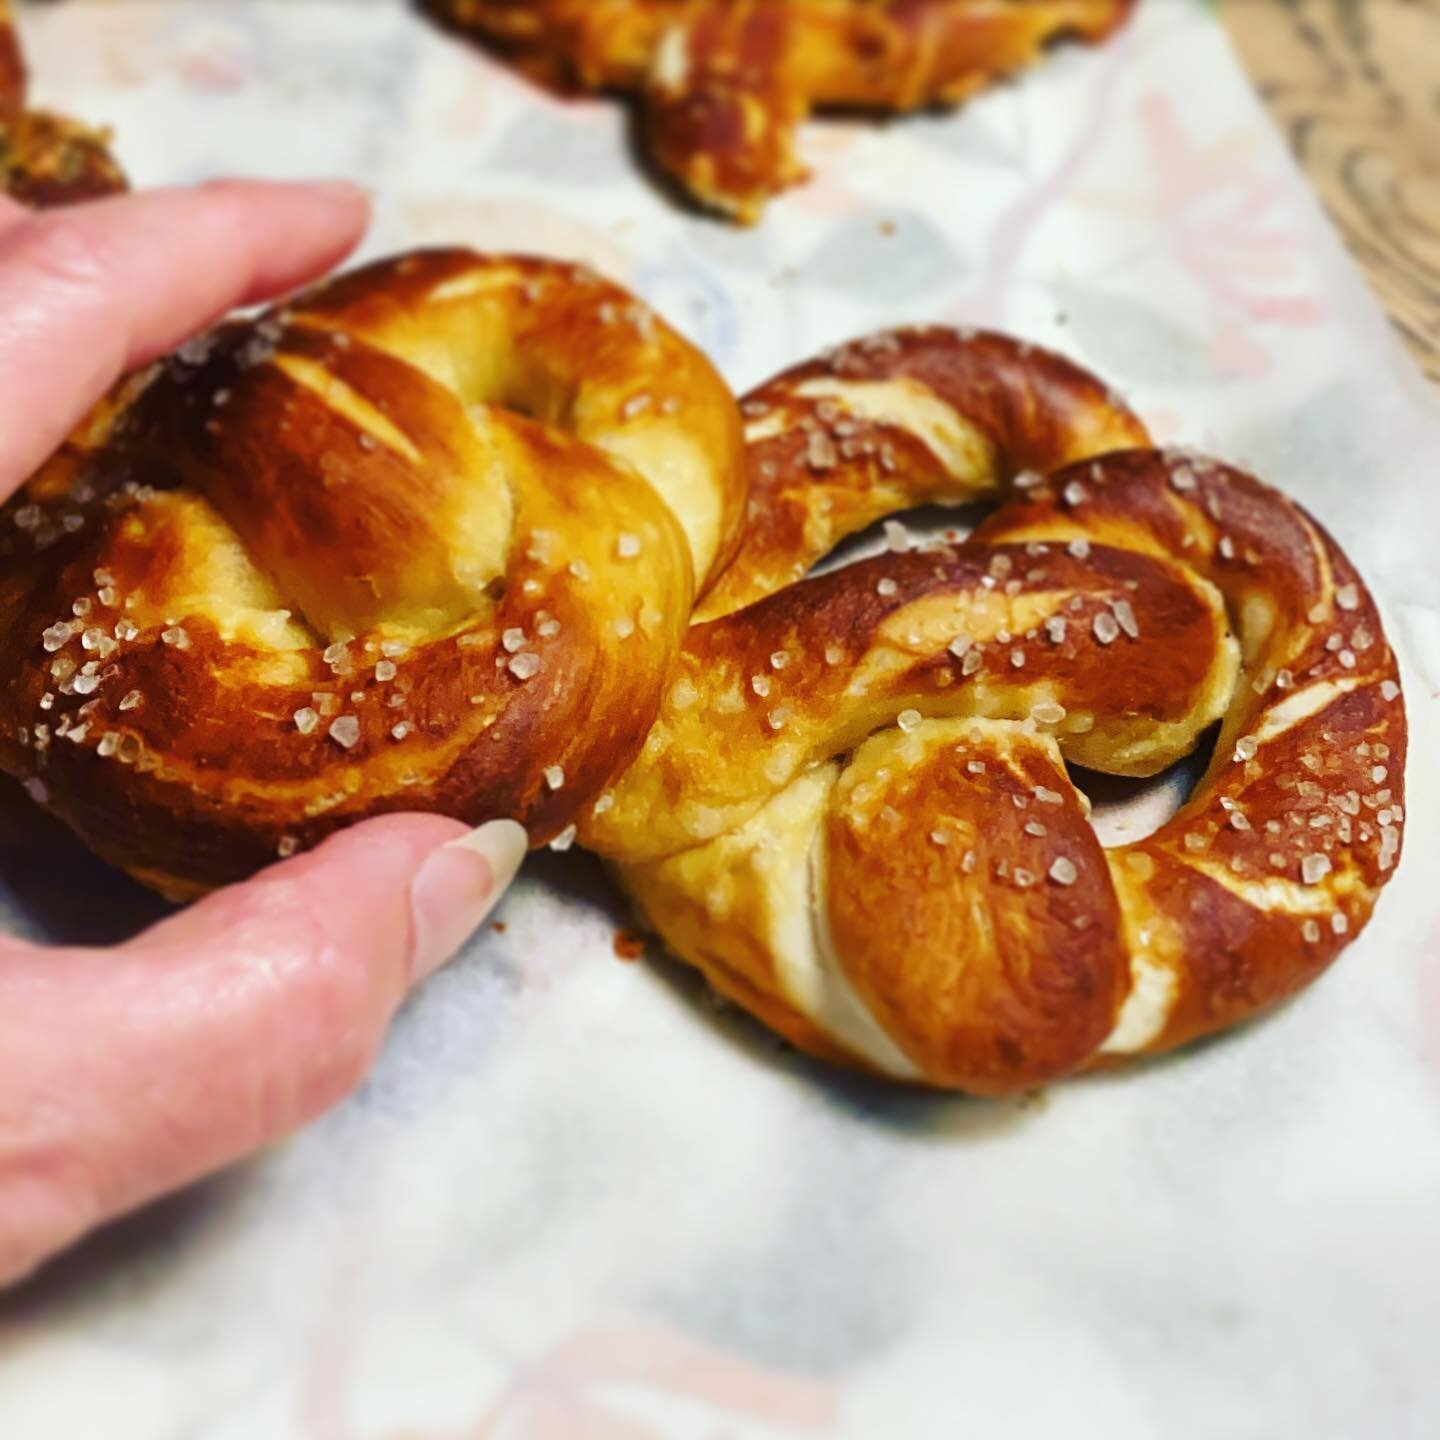 Home baking again!
#pretzels #nom